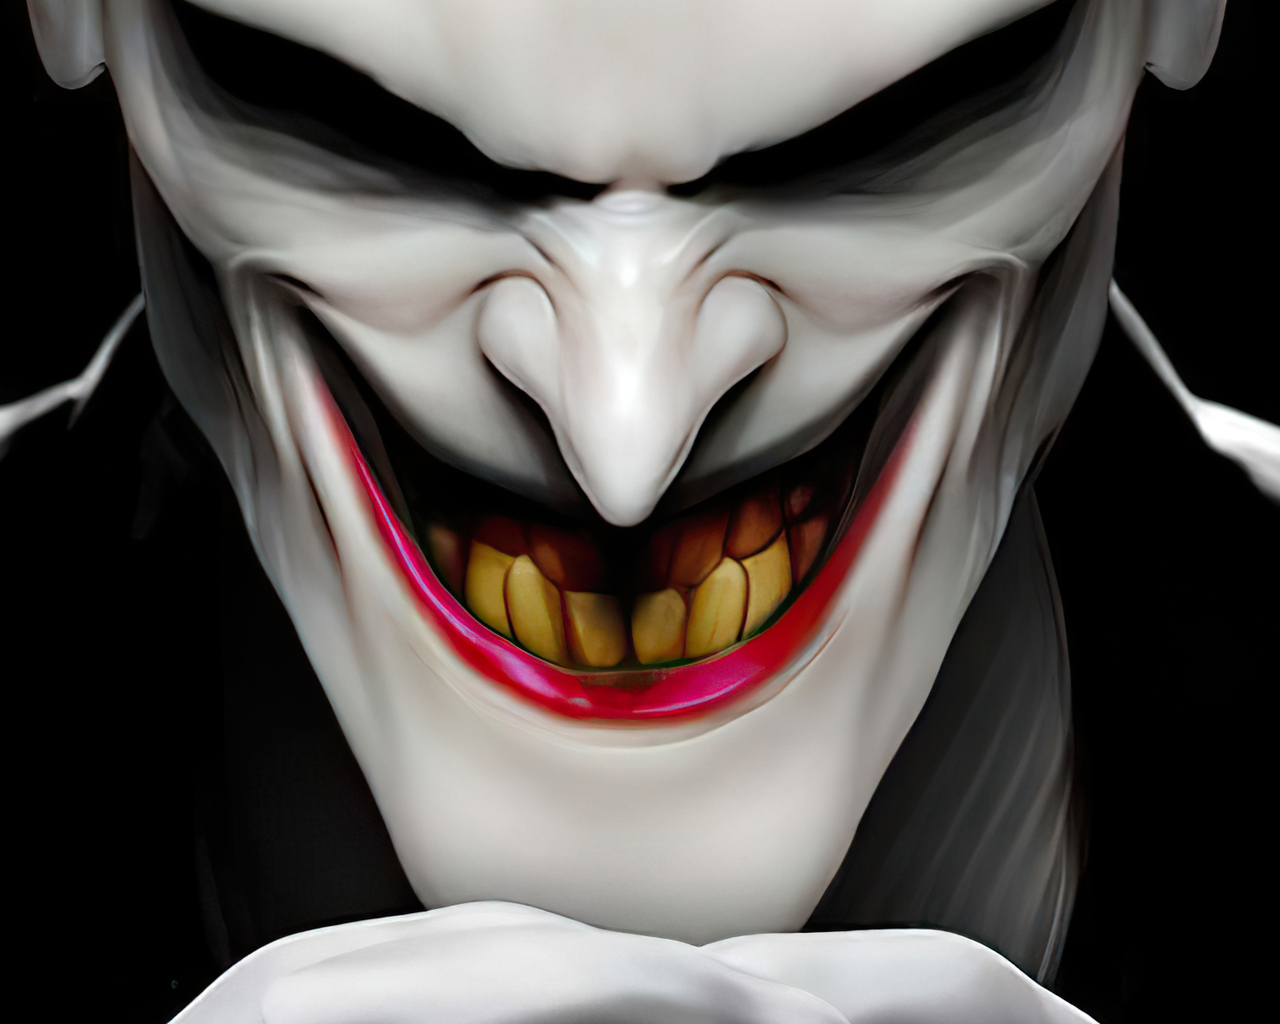 1280x1024 Joker Danger Smile Artwork 1280x1024 Resolution HD 4k ...